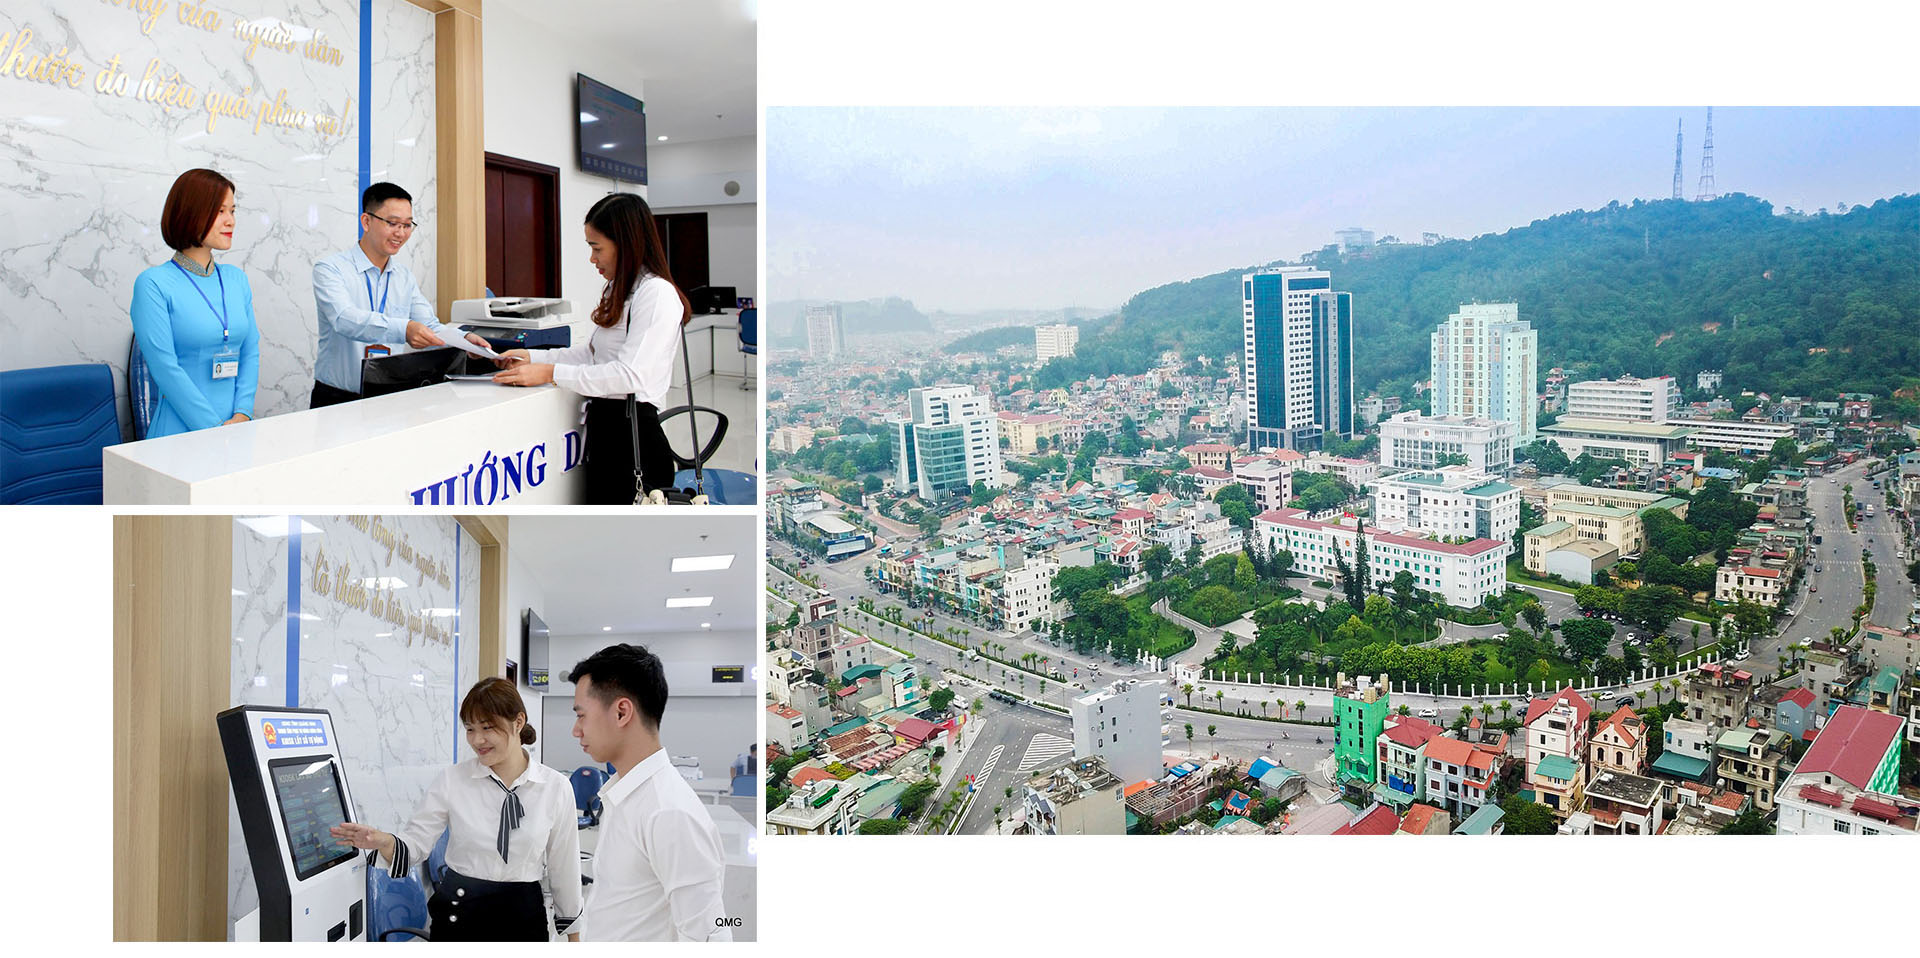 Trung tâm Phục vụ hành chính công tỉnh đã không ngừng đẩy mạnh cải cách hành chính, xây dựng chính quyền điện tử, góp phần tạo bước tiến vượt bậc về các chỉ số PCI, PAR INDEX của tỉnh, thúc đẩy kinh tế - xã hội phát triển, thu hút nhiều nhà đầu tư đến Quảng Ninh.